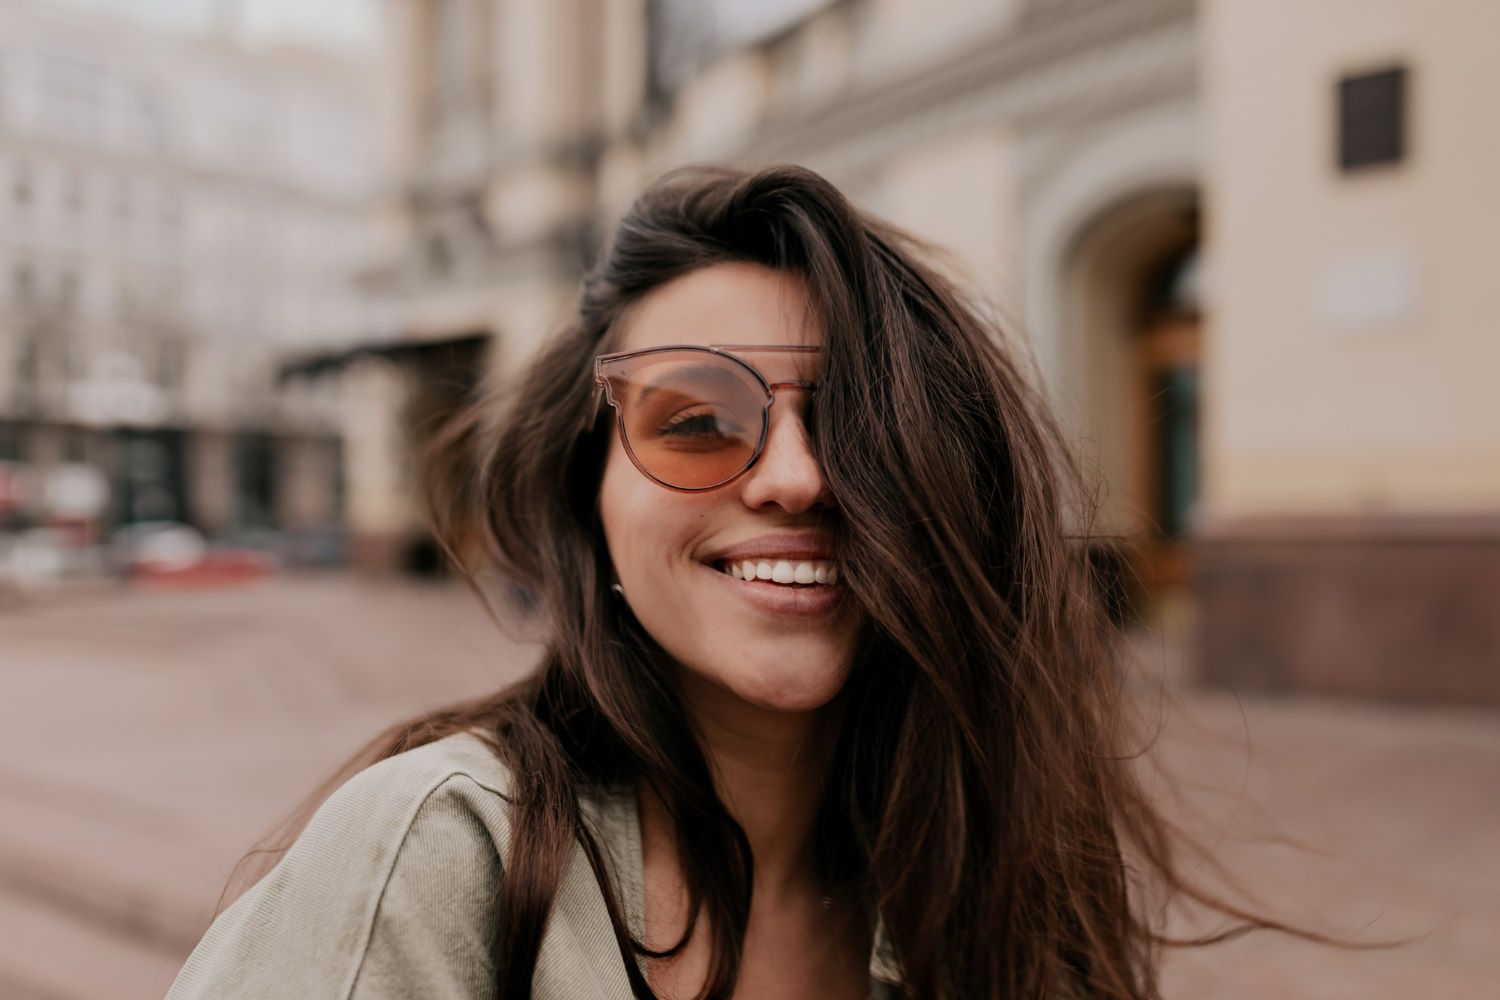 Kobiety uwielbiają modę, a Polaroid okulary przeciwsłoneczne potrafią dodać nie tylko stylu, ale także ochronić oczy przed szkodliwymi promieniami słonecznymi